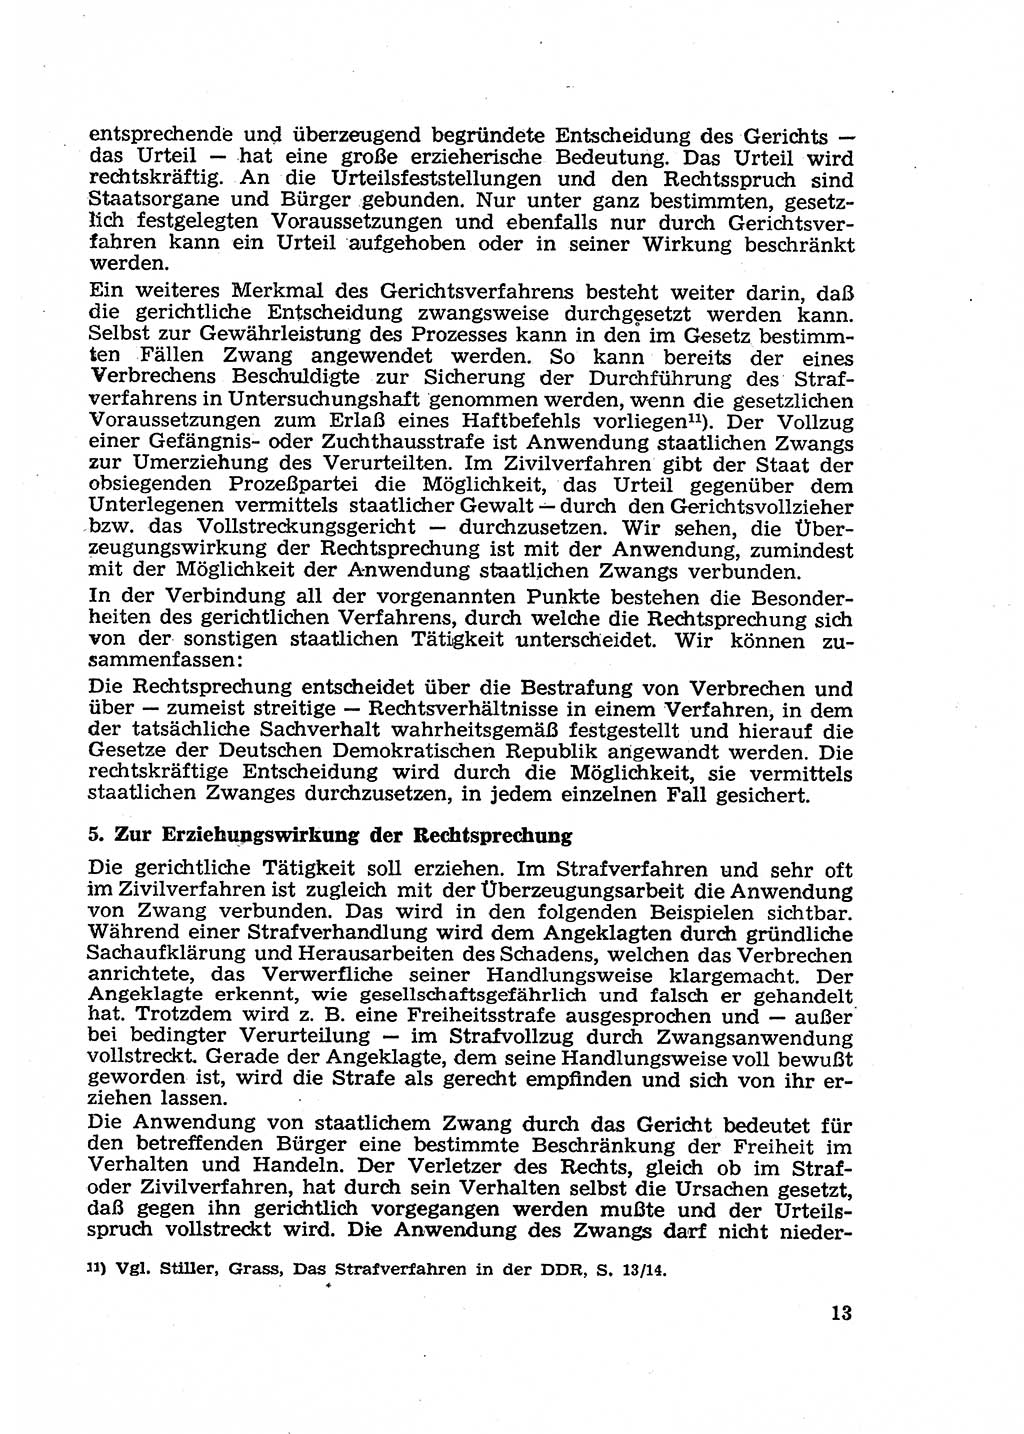 Gericht und Rechtsprechung in der Deutschen Demokratischen Republik (DDR) 1956, Seite 13 (Ger. Rechtspr. DDR 1956, S. 13)